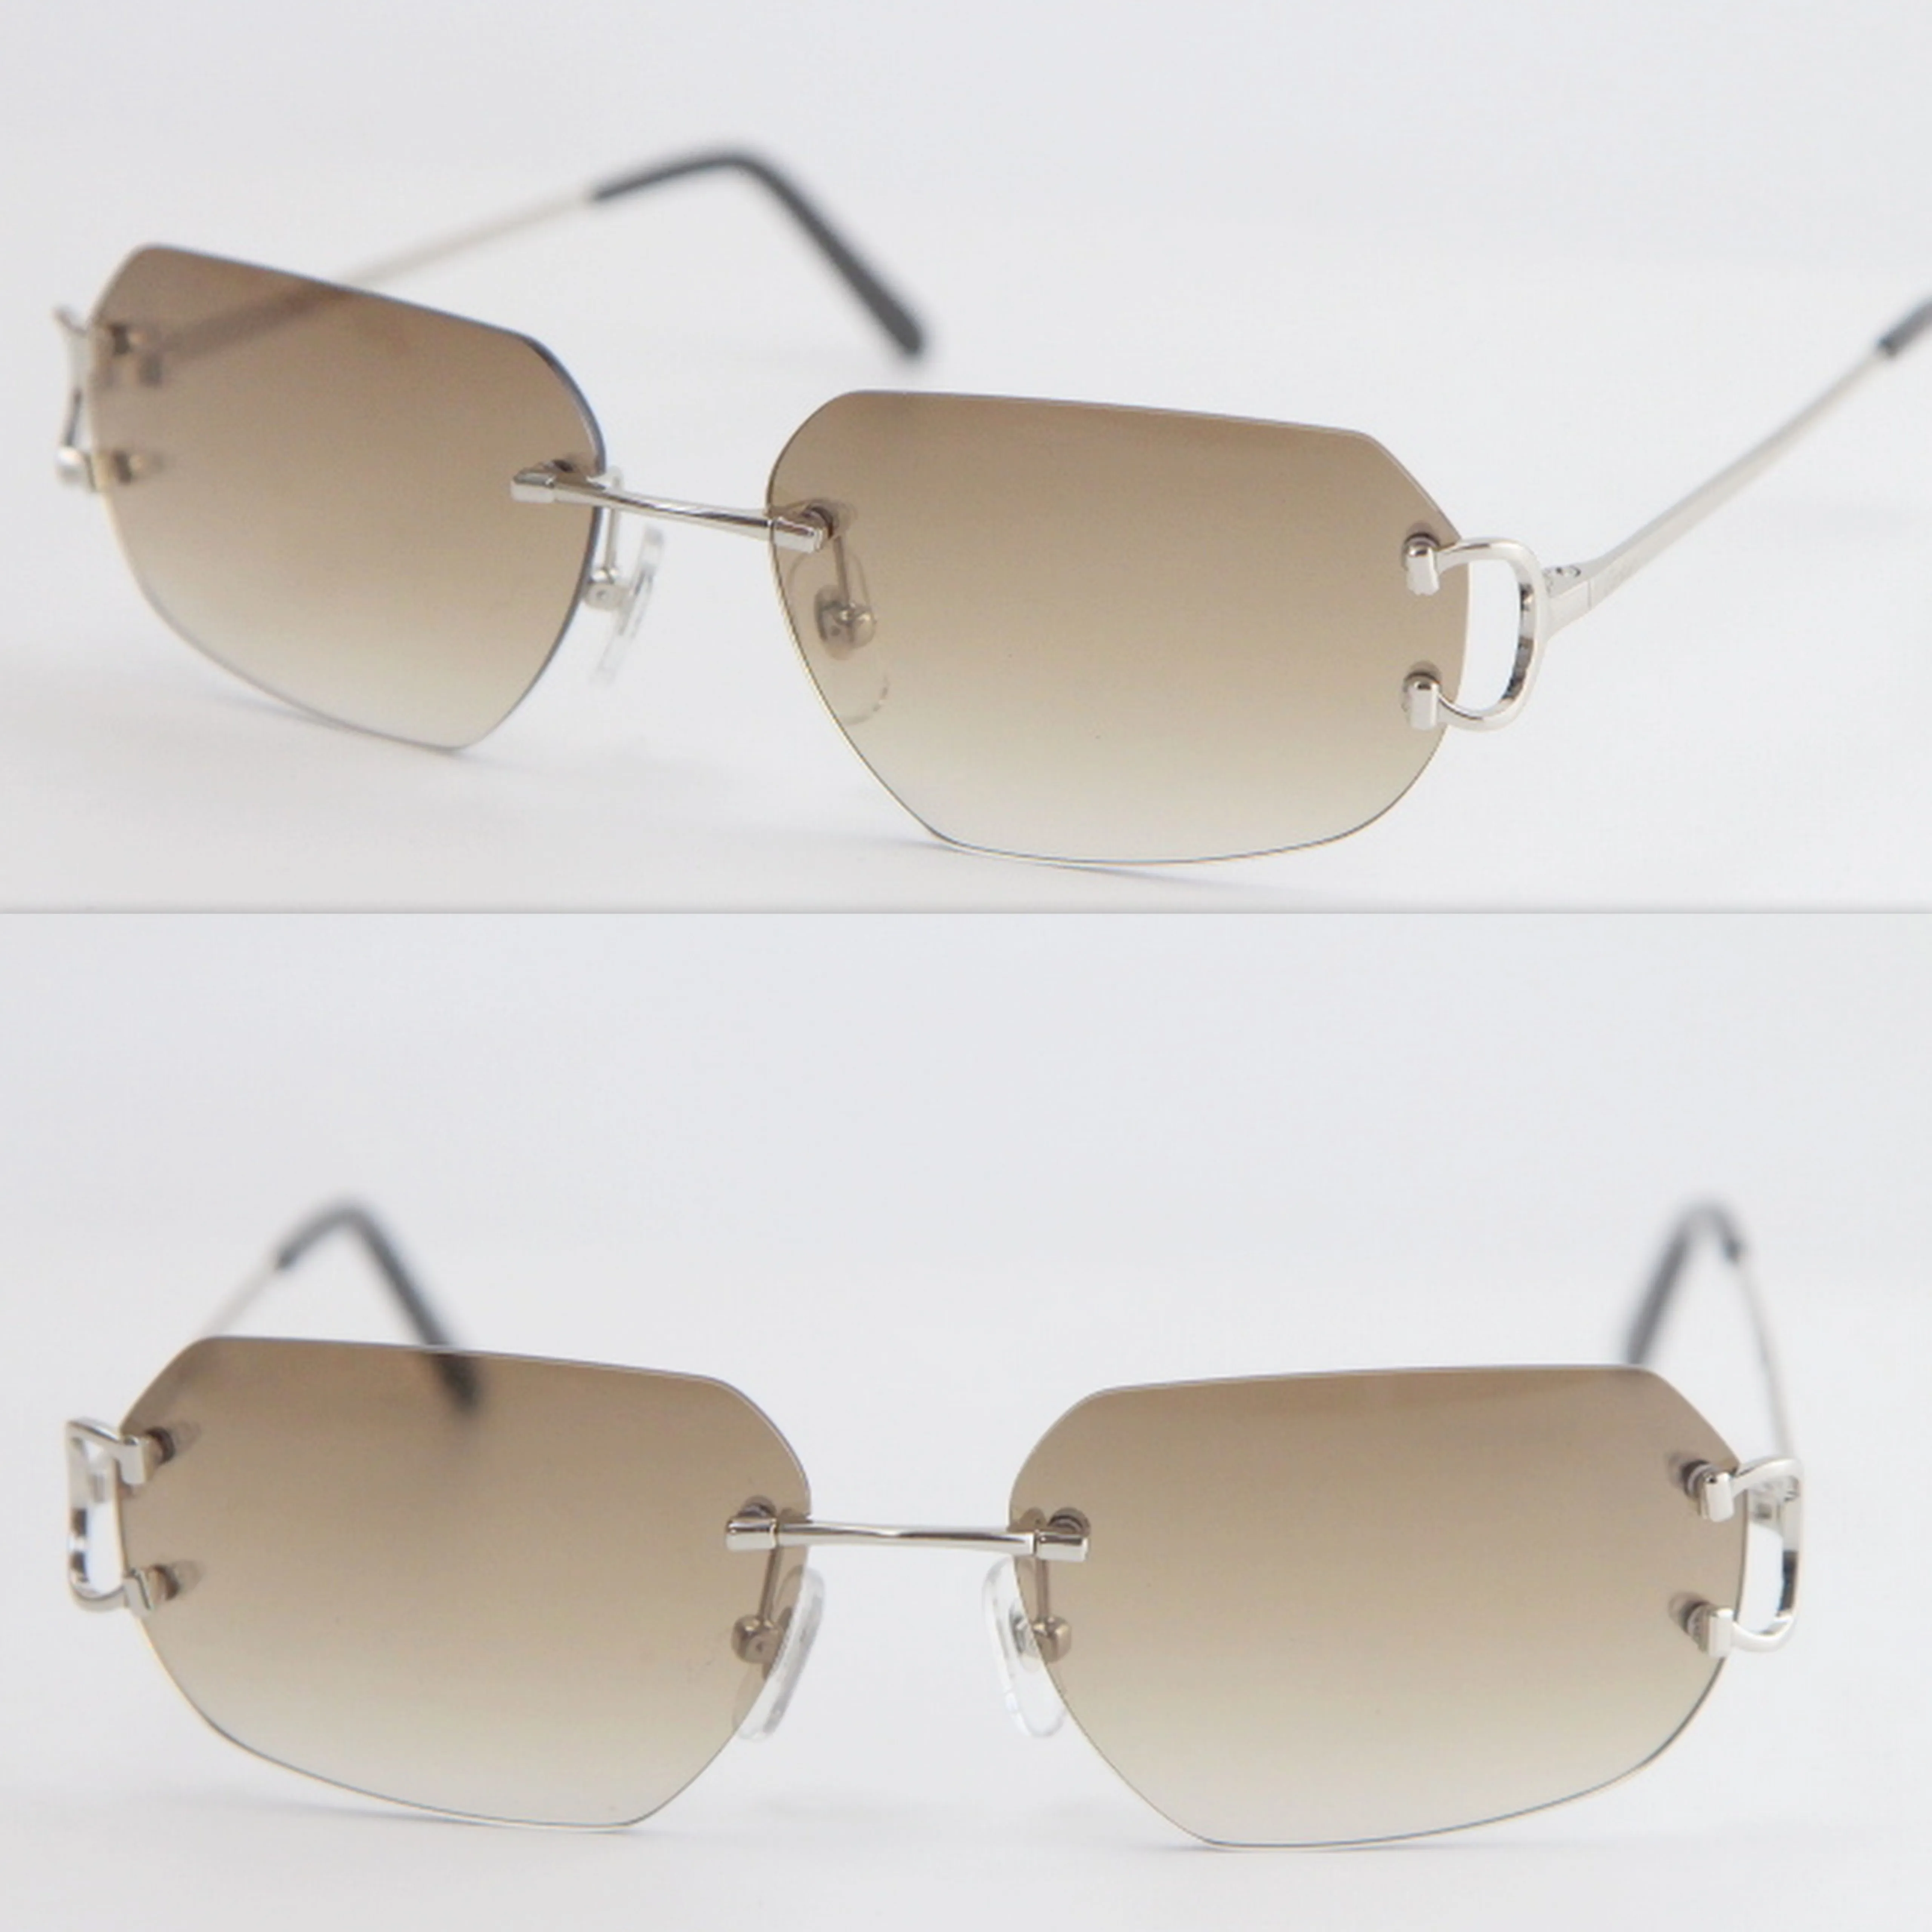 Hele metalen randloze mannen vrouwen grote vierkante zonnebril draadframe unisex brillen mannelijke en vrouwelijke mode-accessoires 343g